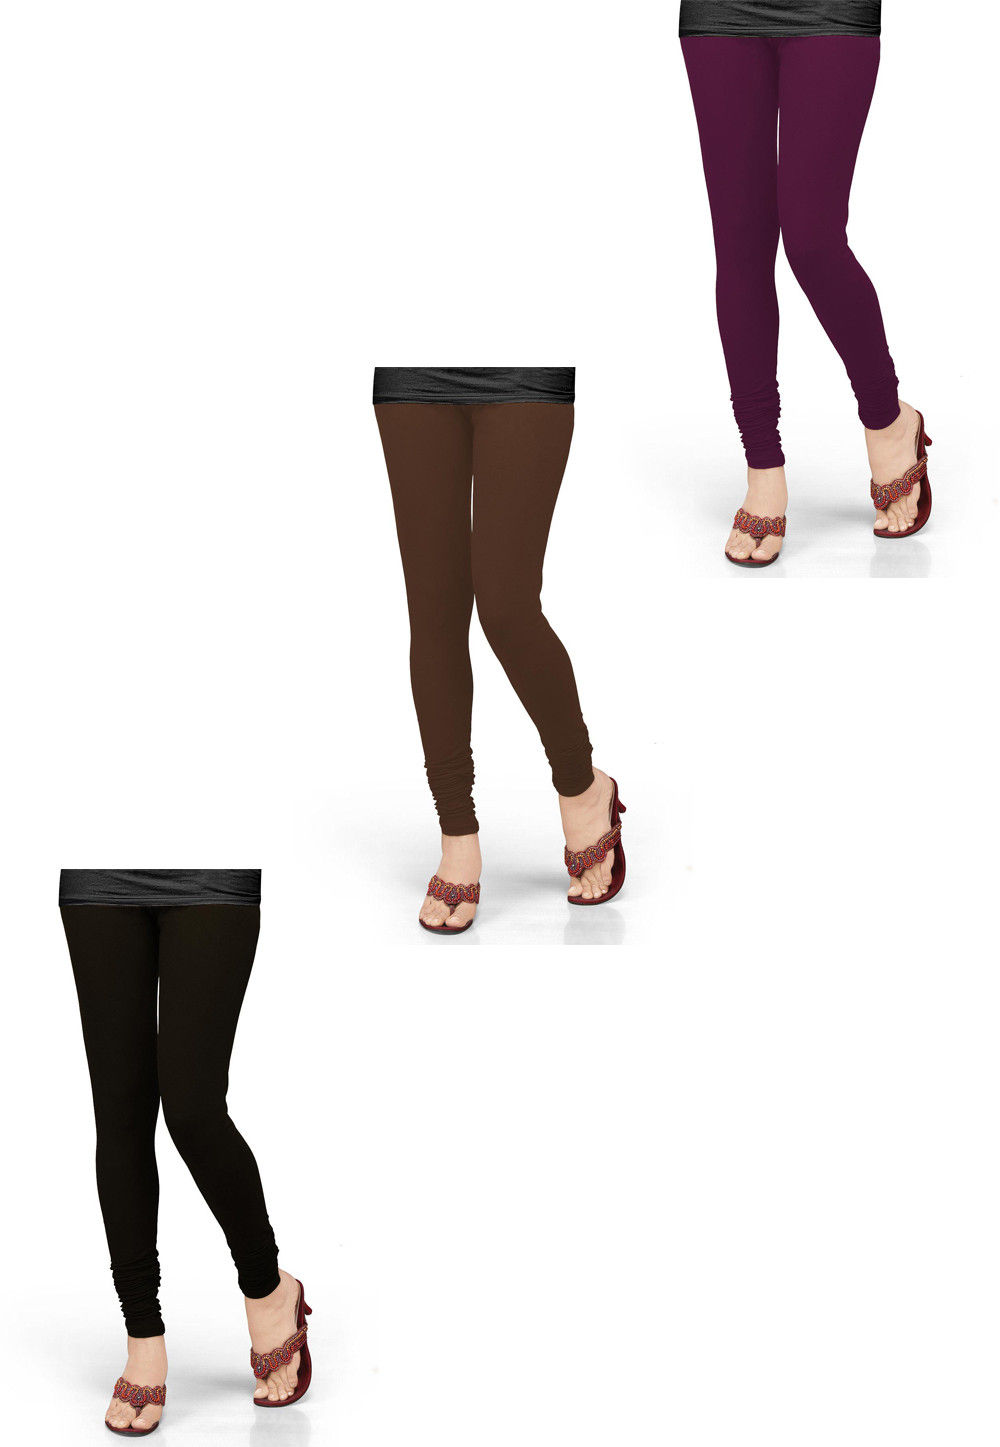 What do you think of the leggings + skirt combo? : r/fempark